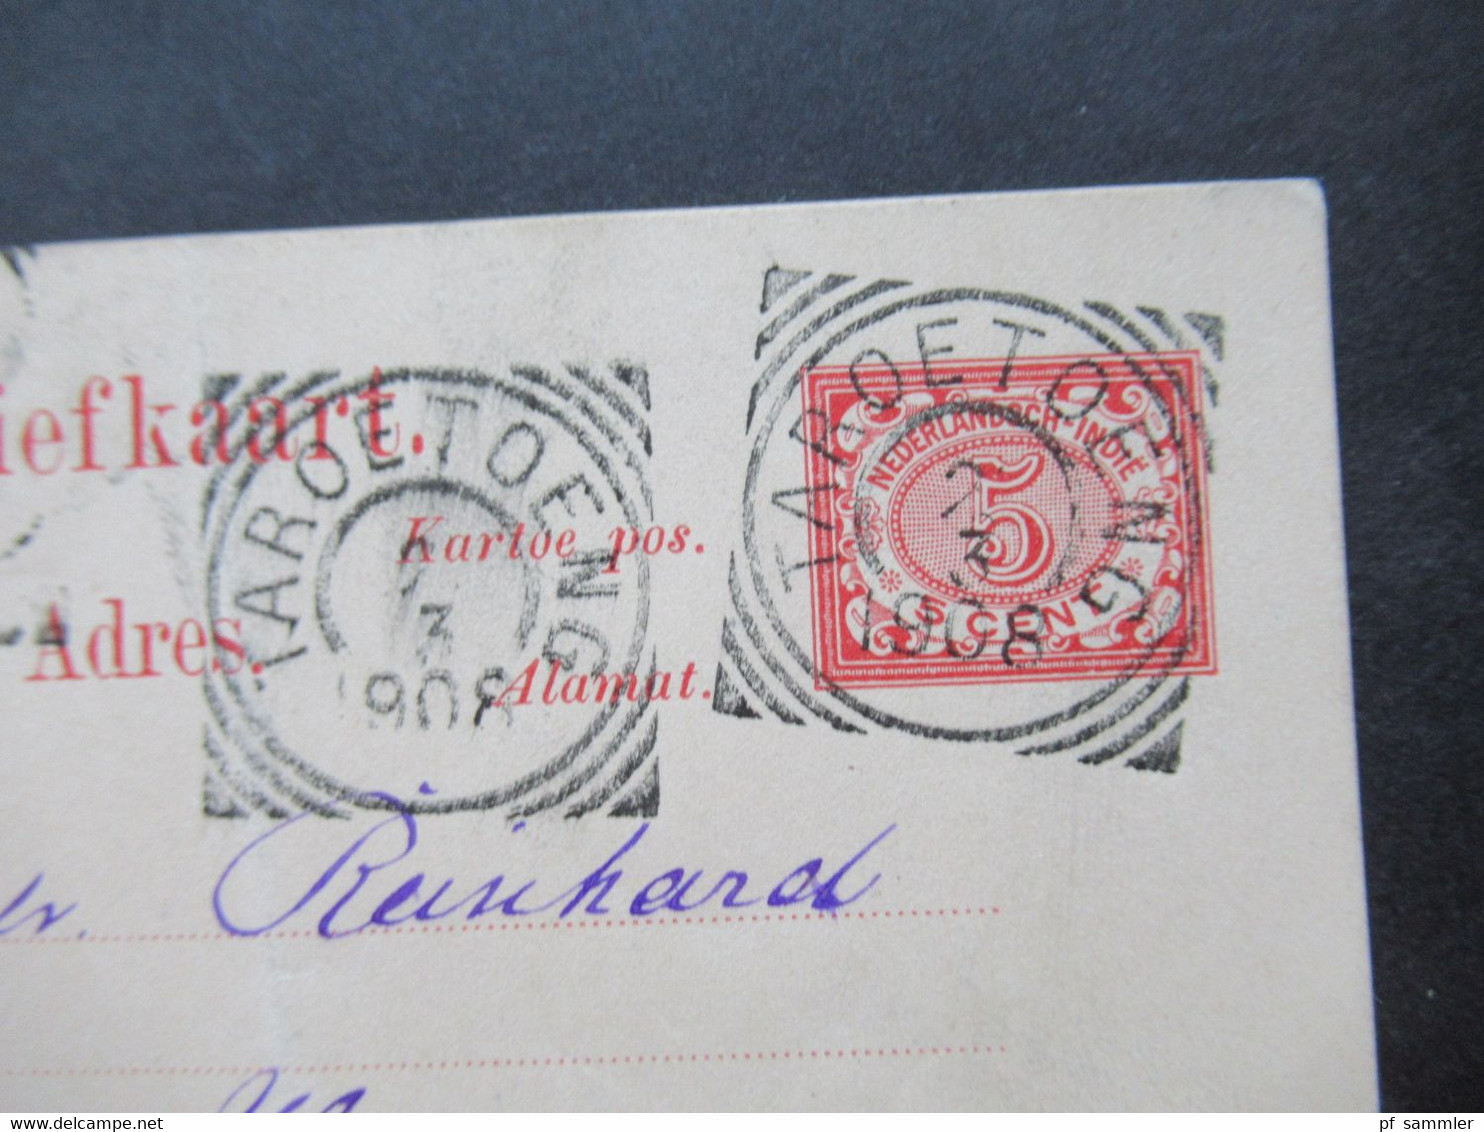 Niederländisch Indien 1908 GA Mit 5 Stempeln U.a. Taroetoeng (2) Nach Hemer Gesendet Anfrage Nach Photopapier 48x64 - Nederlands-Indië